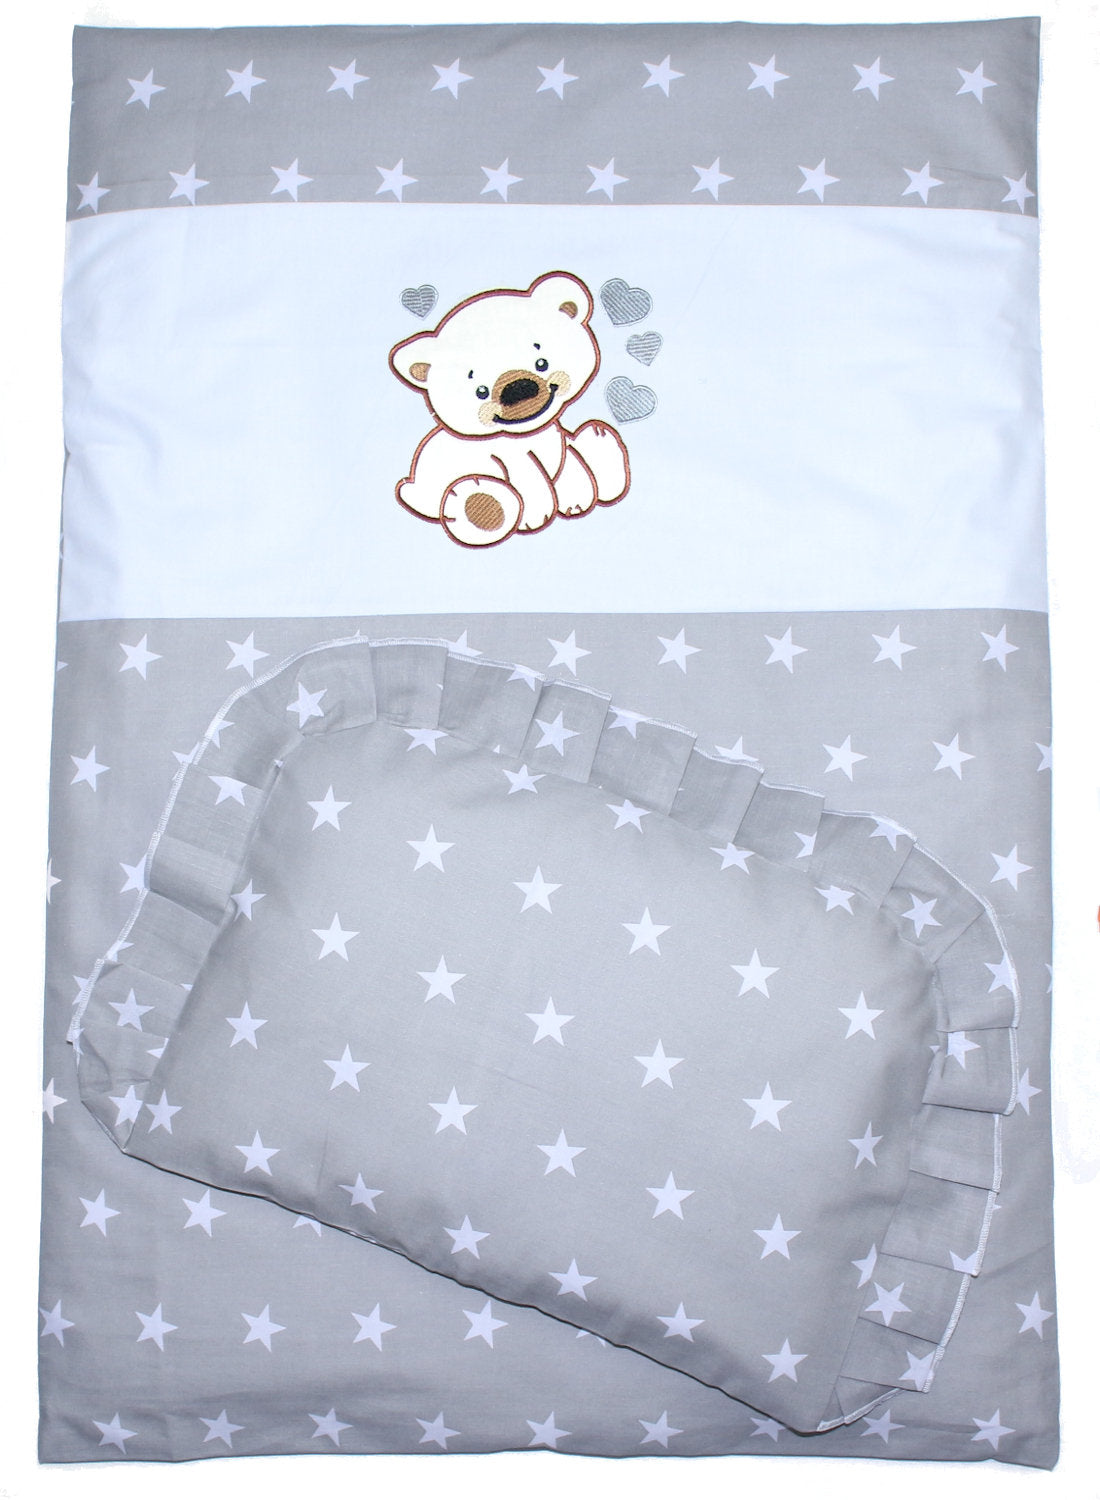 2- 4tlg Kinderwagenset - Bärchen mit Herzen - Sterne auf Grau - Bettwäsche für Kinderwagen Bezüge Decke Kissen